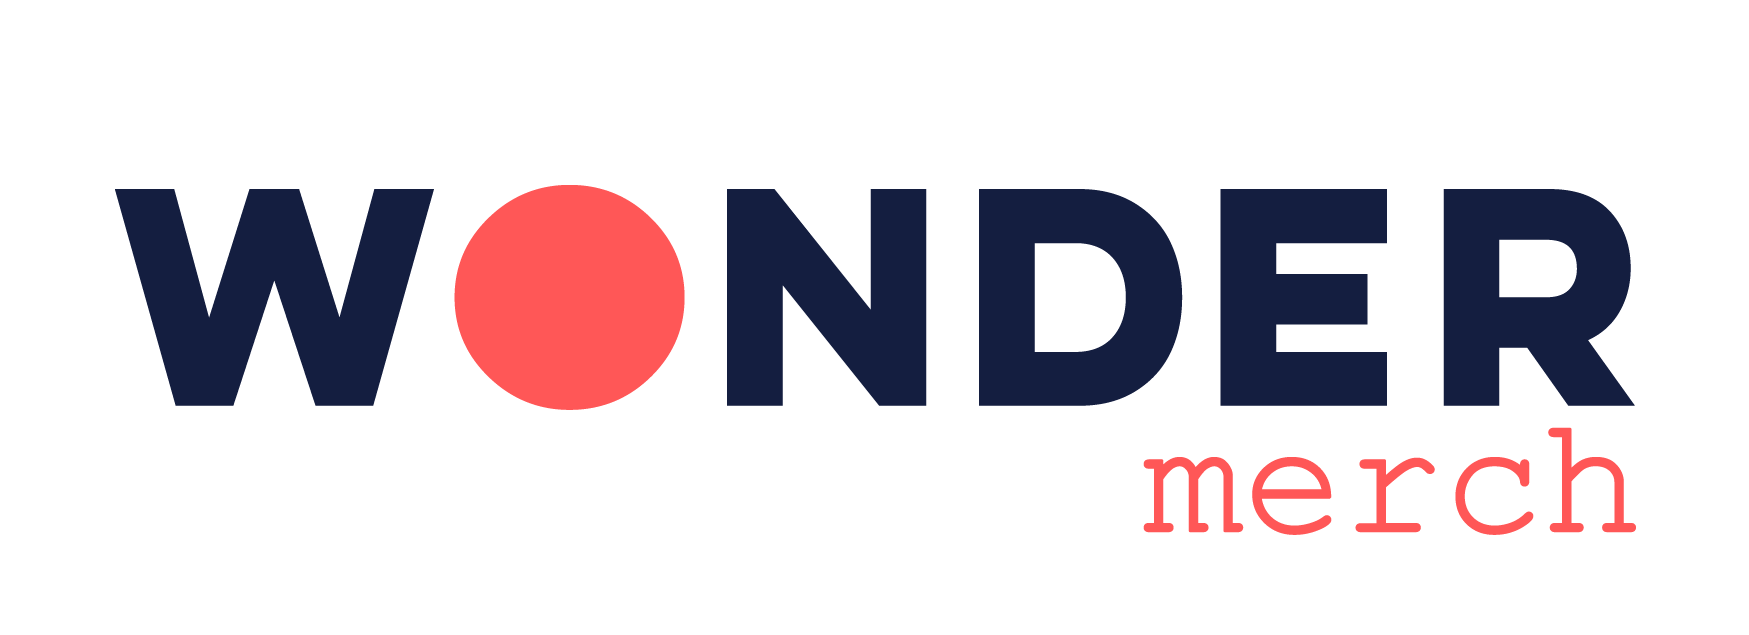 Wonder Merch logo